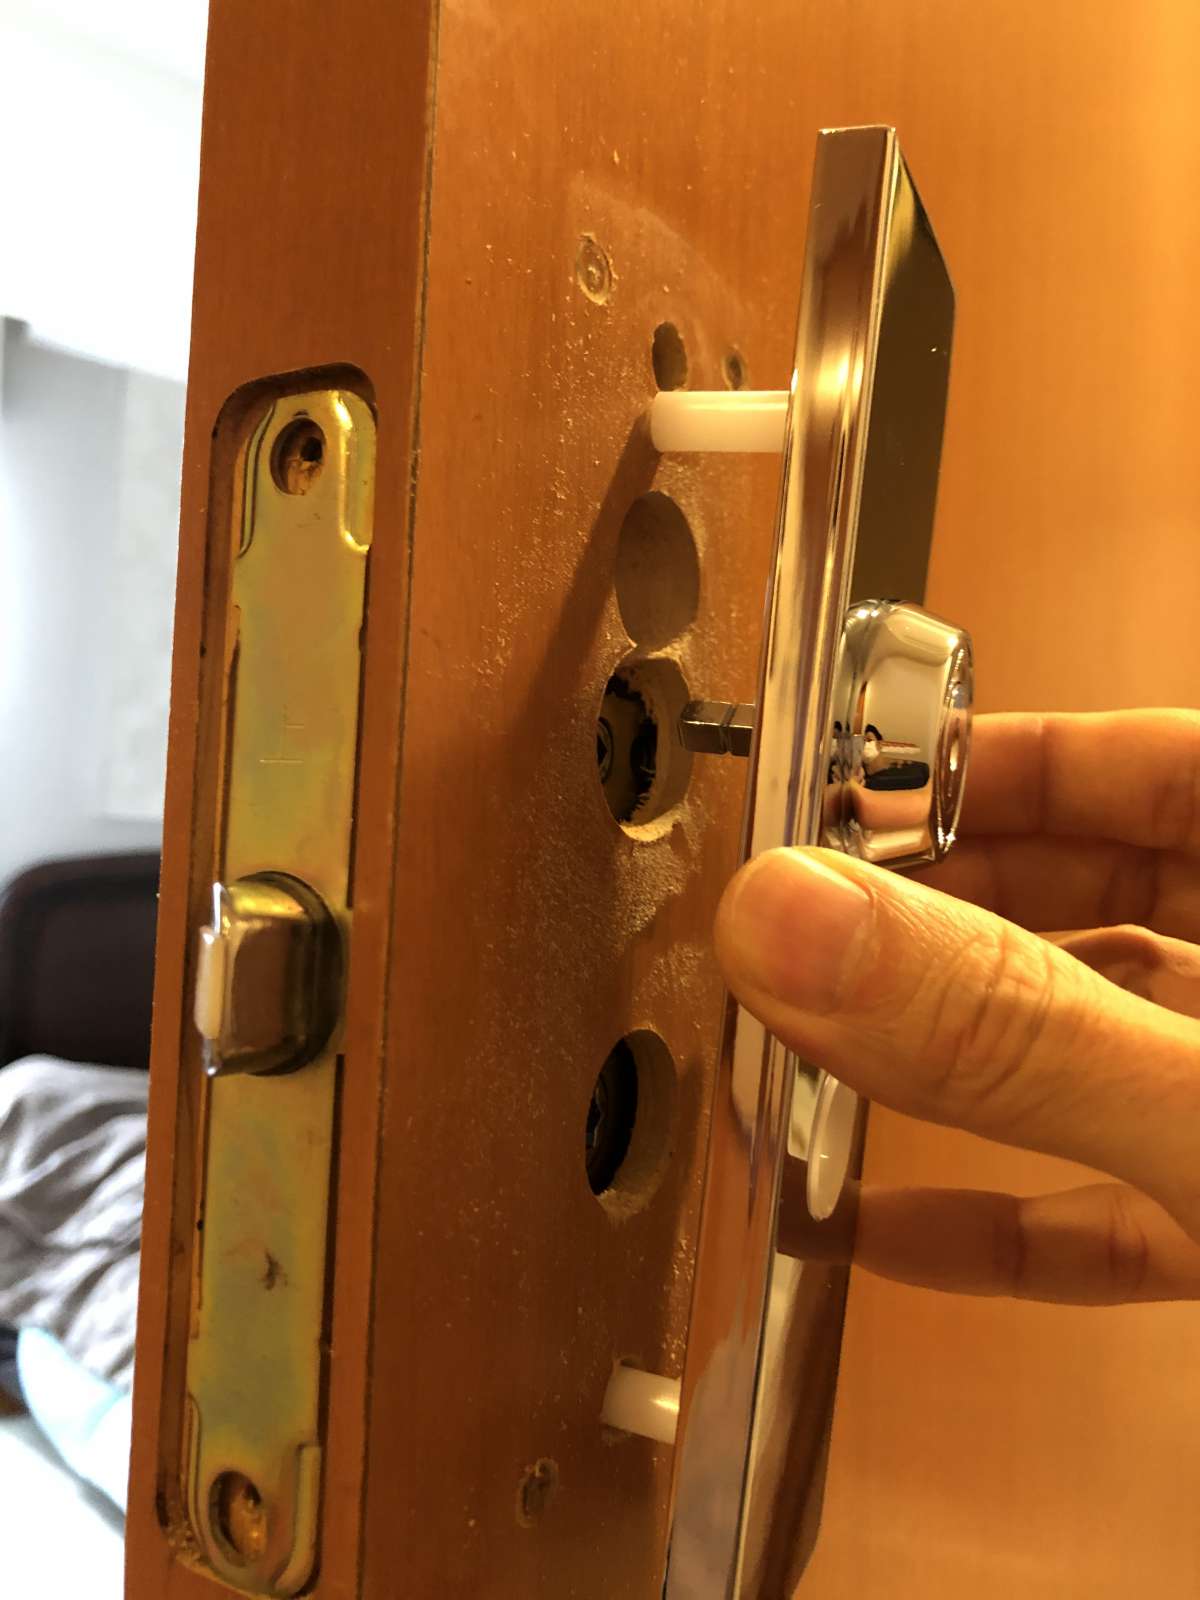 部屋のドアに鍵をつけたい、そんな時【屋内ドア鍵設置】 洗面台やトイレ・給湯器・エアコンなどの交換なら便利屋Handyman